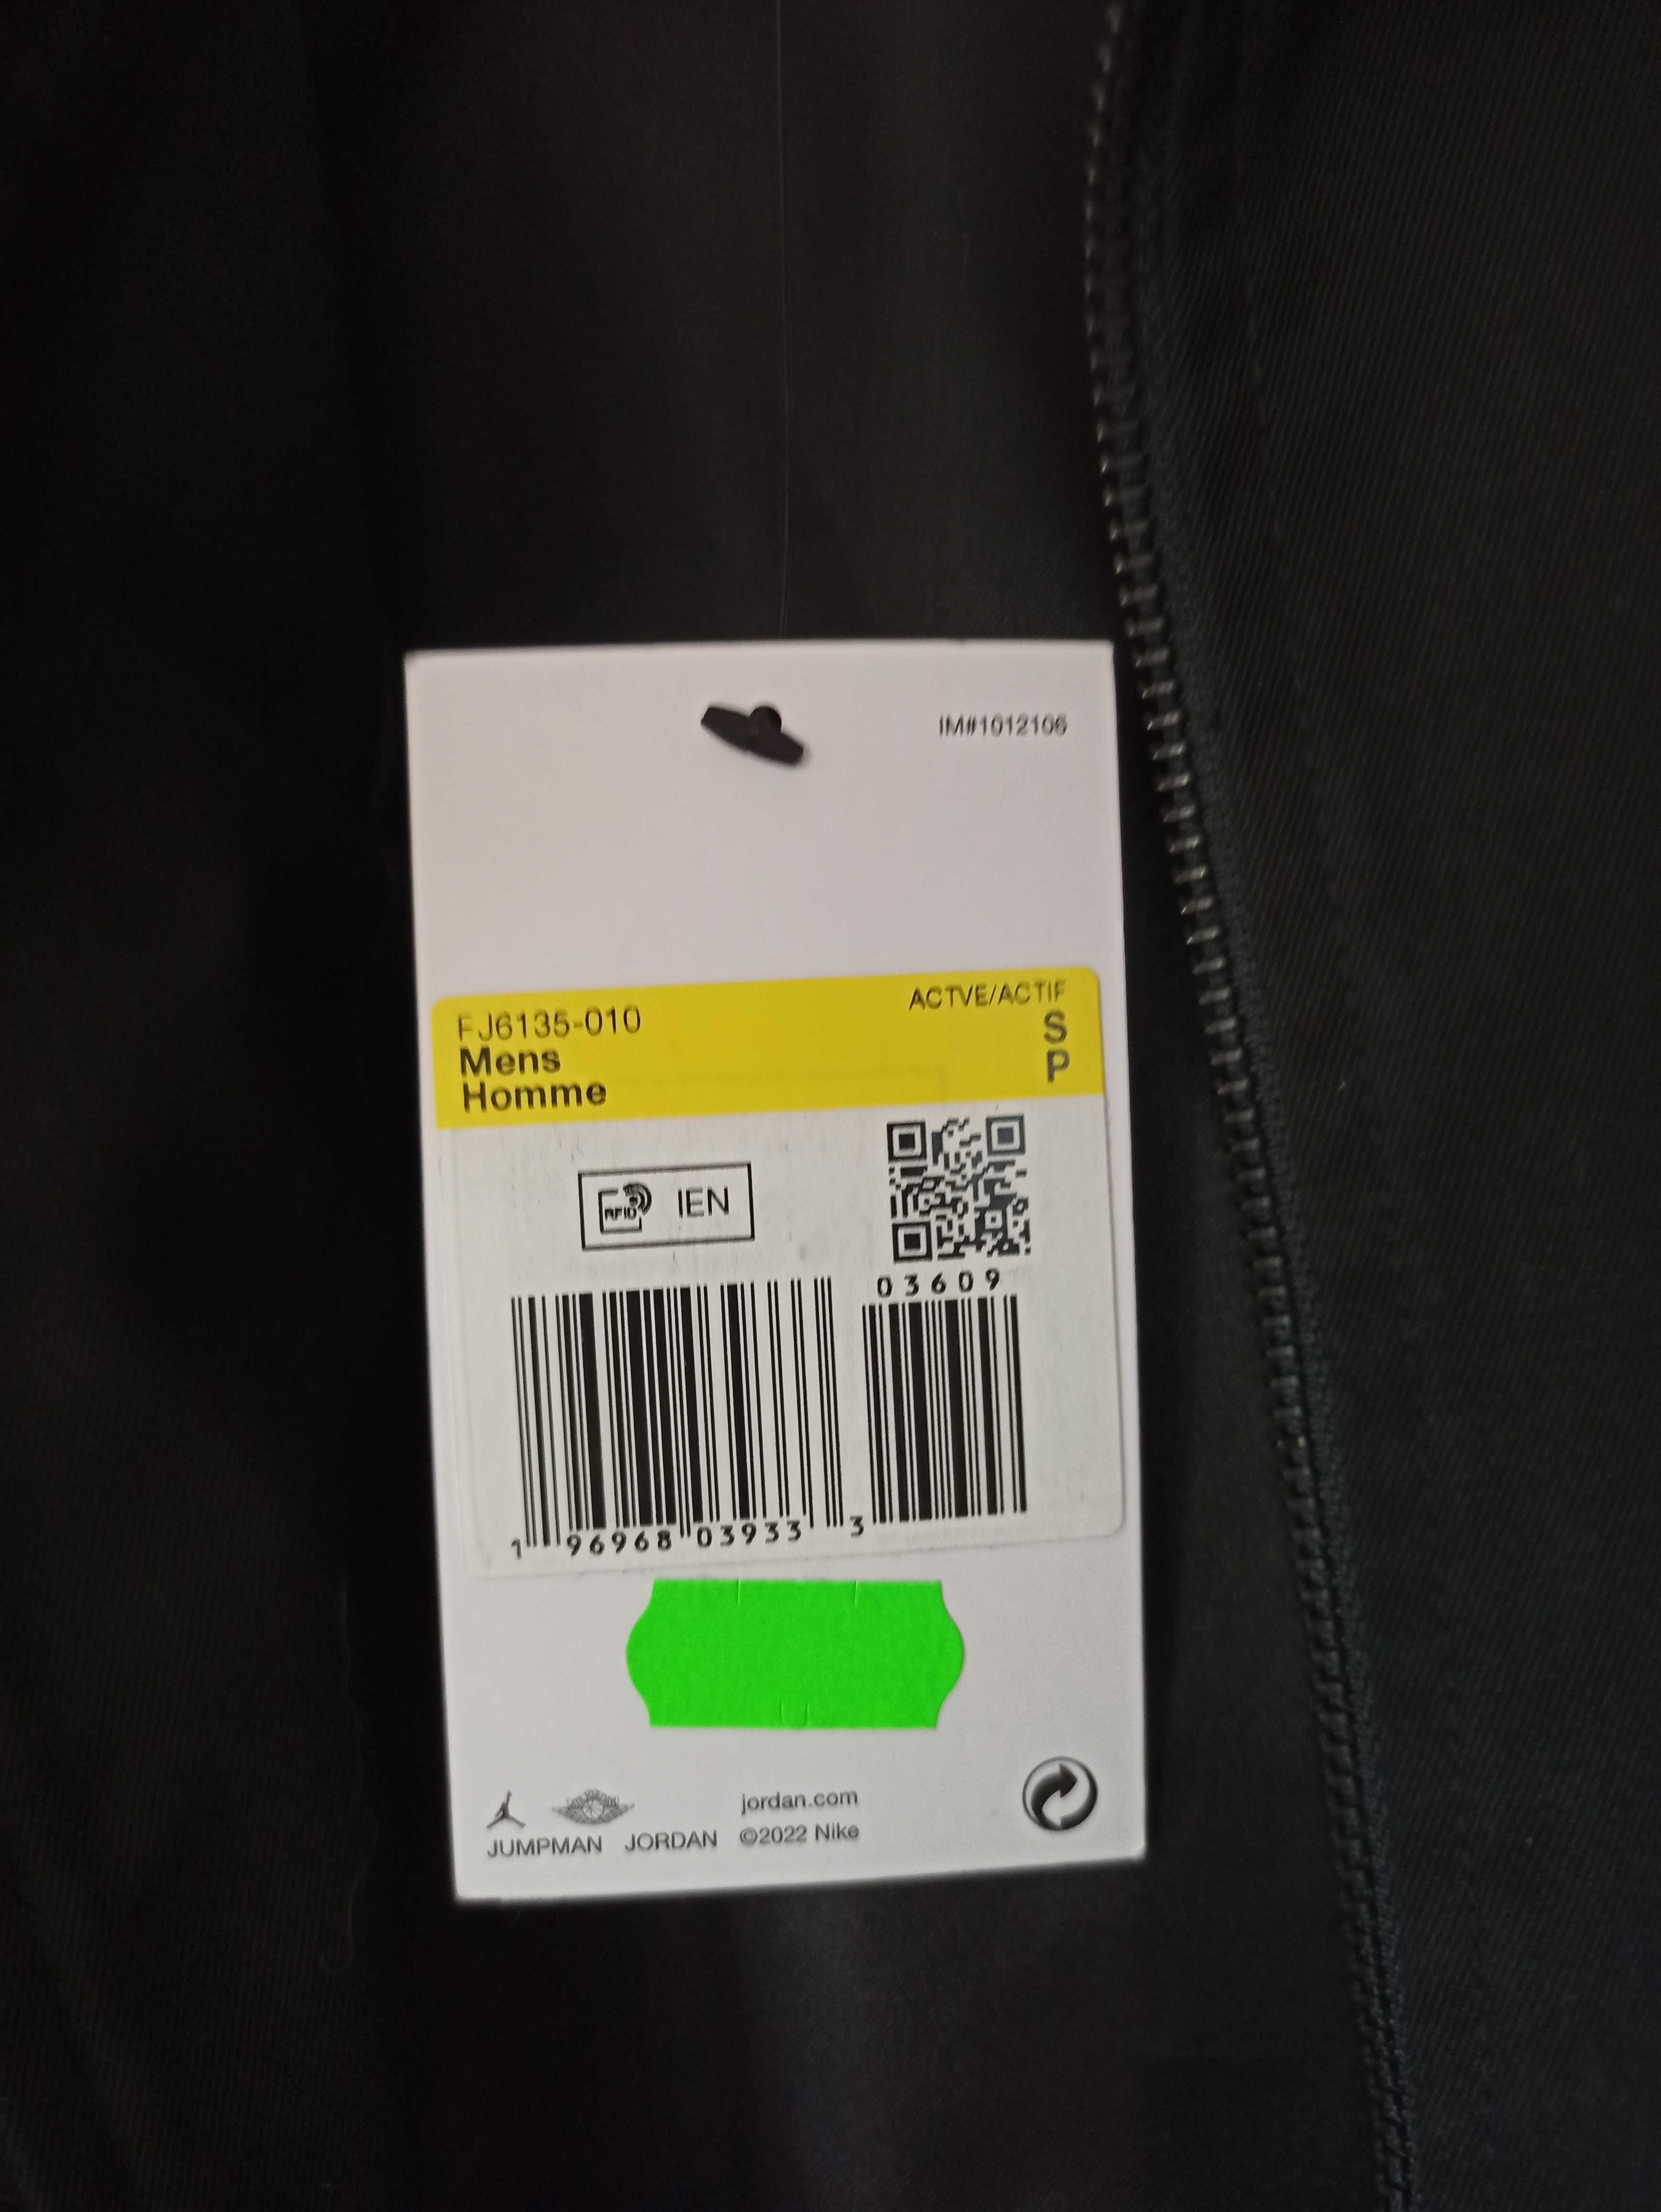 (roz. S- Small) Nike Jordan x J Balvin Woven Jacket Black FJ6135,-010